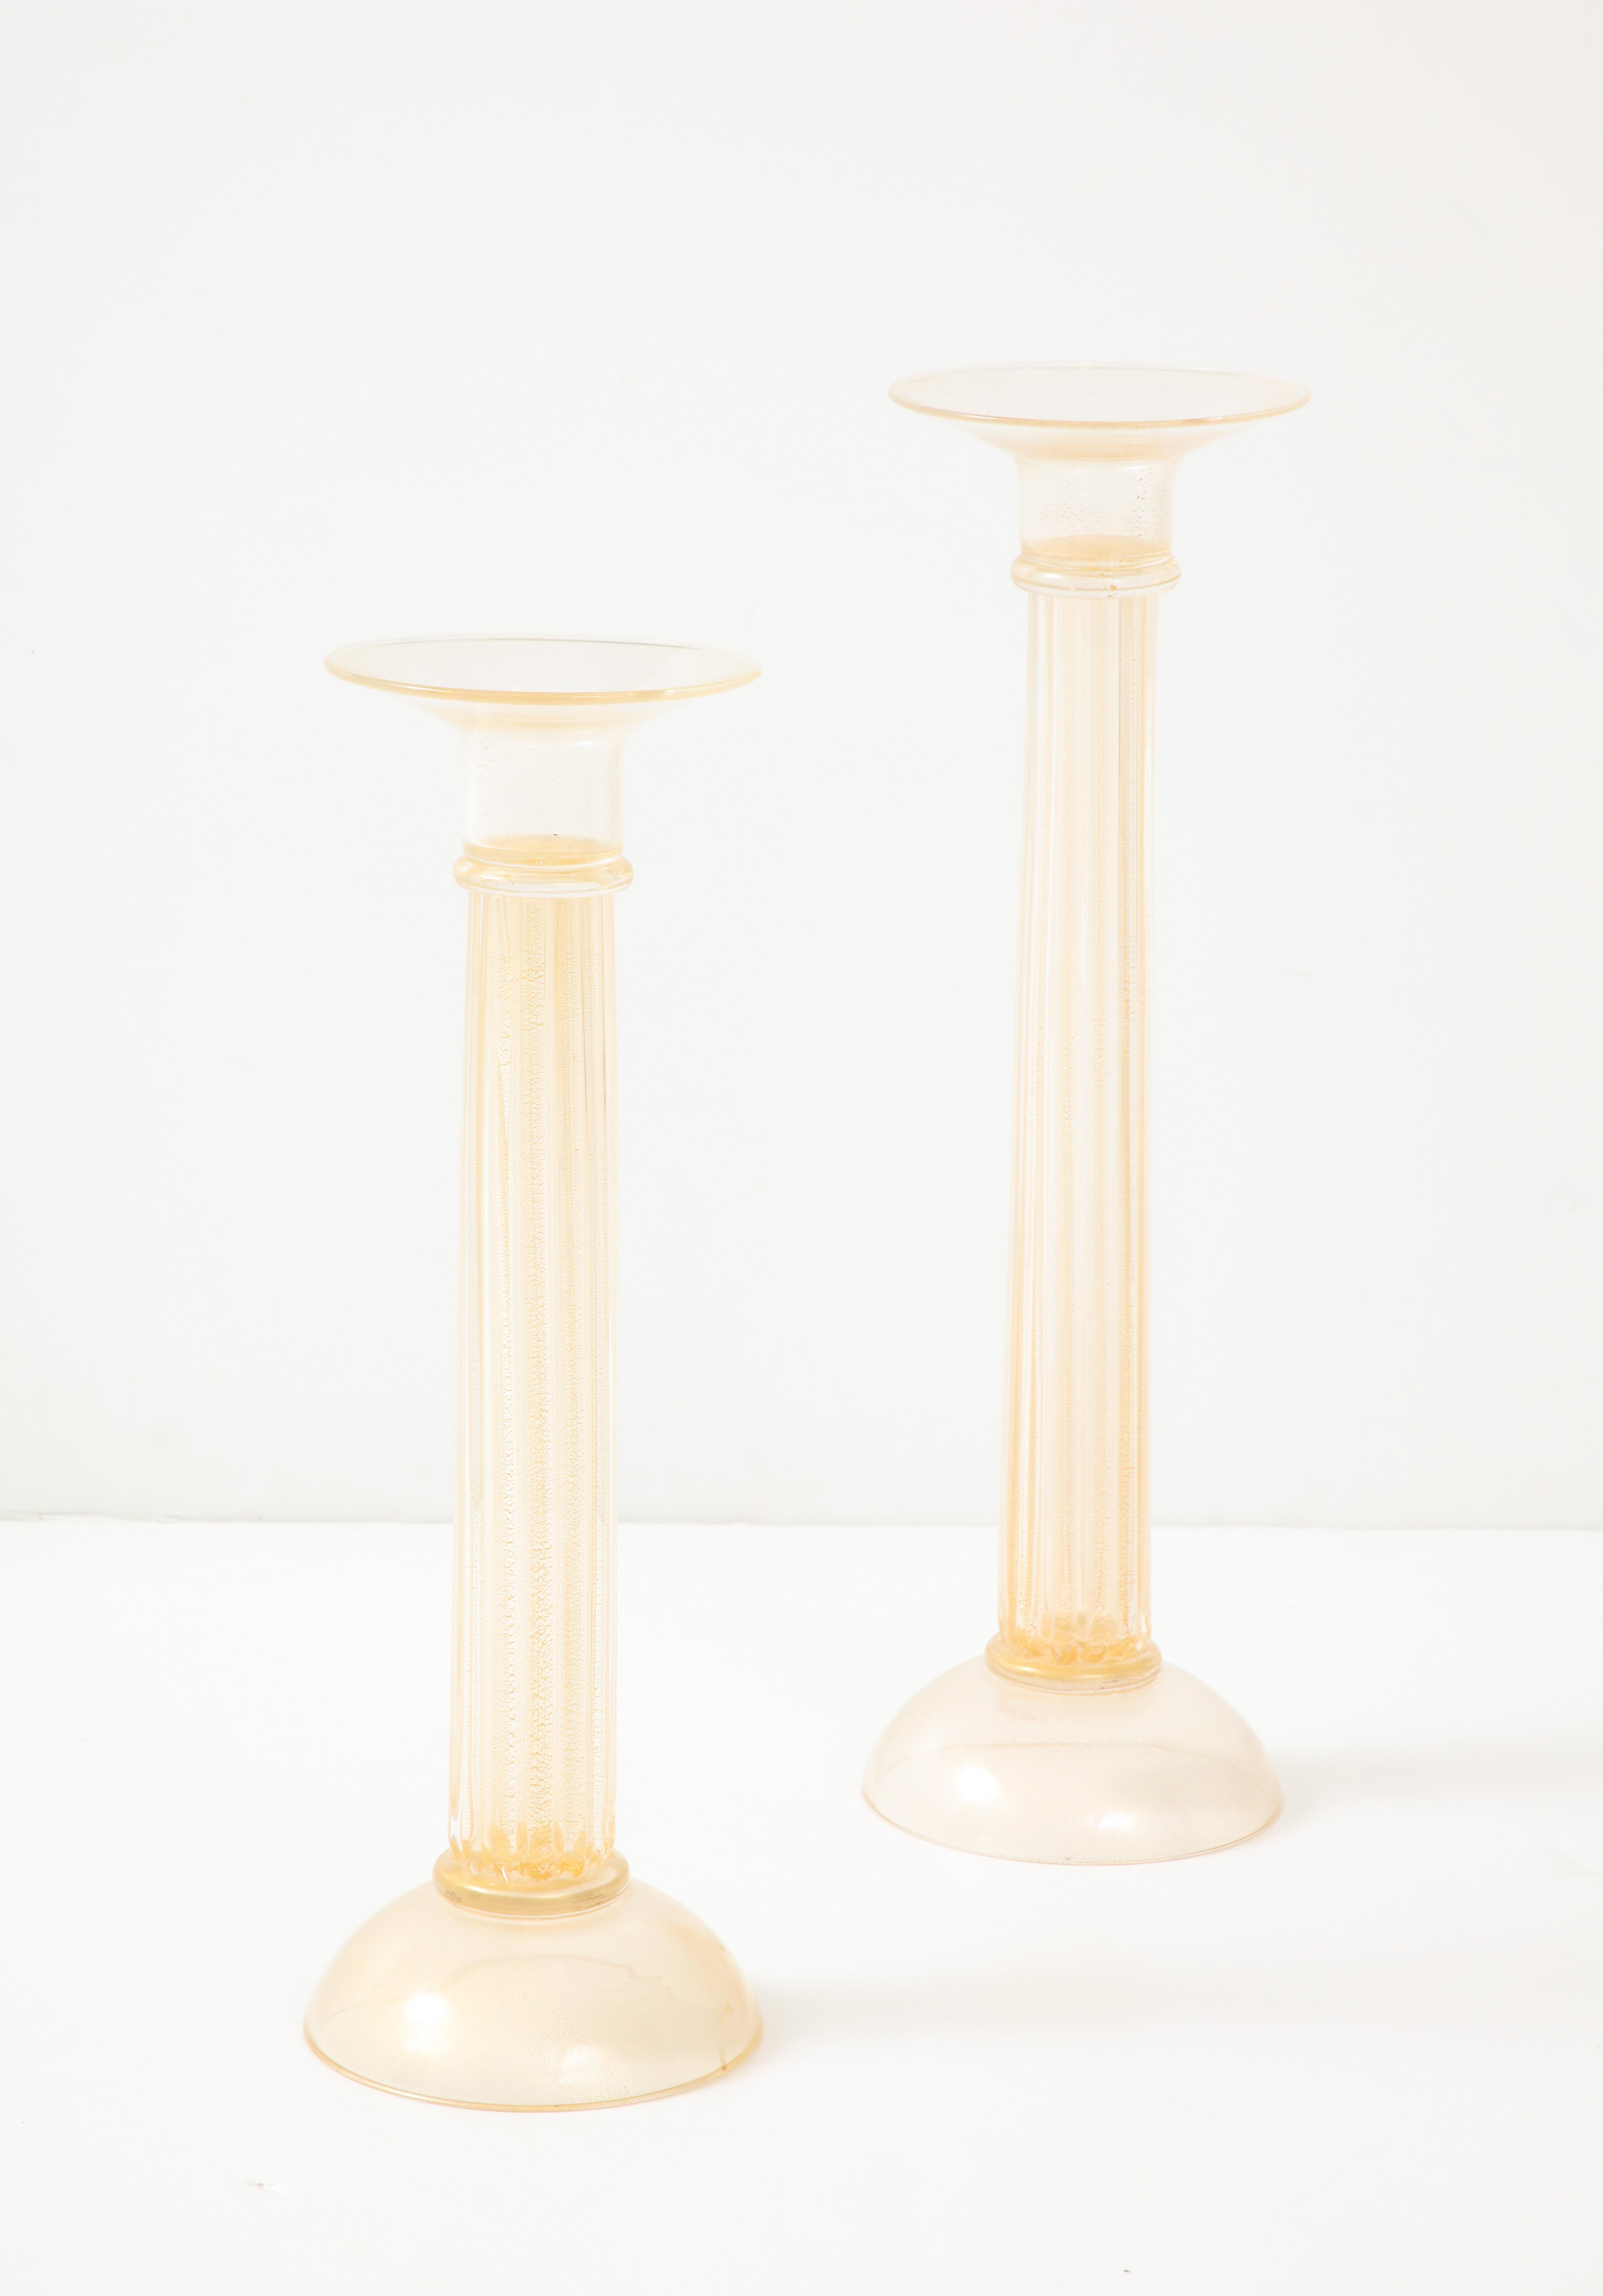 Wunderschönes Paar großer Oggetti Italy Murano Glas Krippenhalter aus den 1980er Jahren, in Vintage Originalzustand mit leichten alters- und gebrauchsbedingten Abnutzungserscheinungen und Patina.

Kleinerer Kerzenhalter Höhe 22'' Tiefe 7.25''